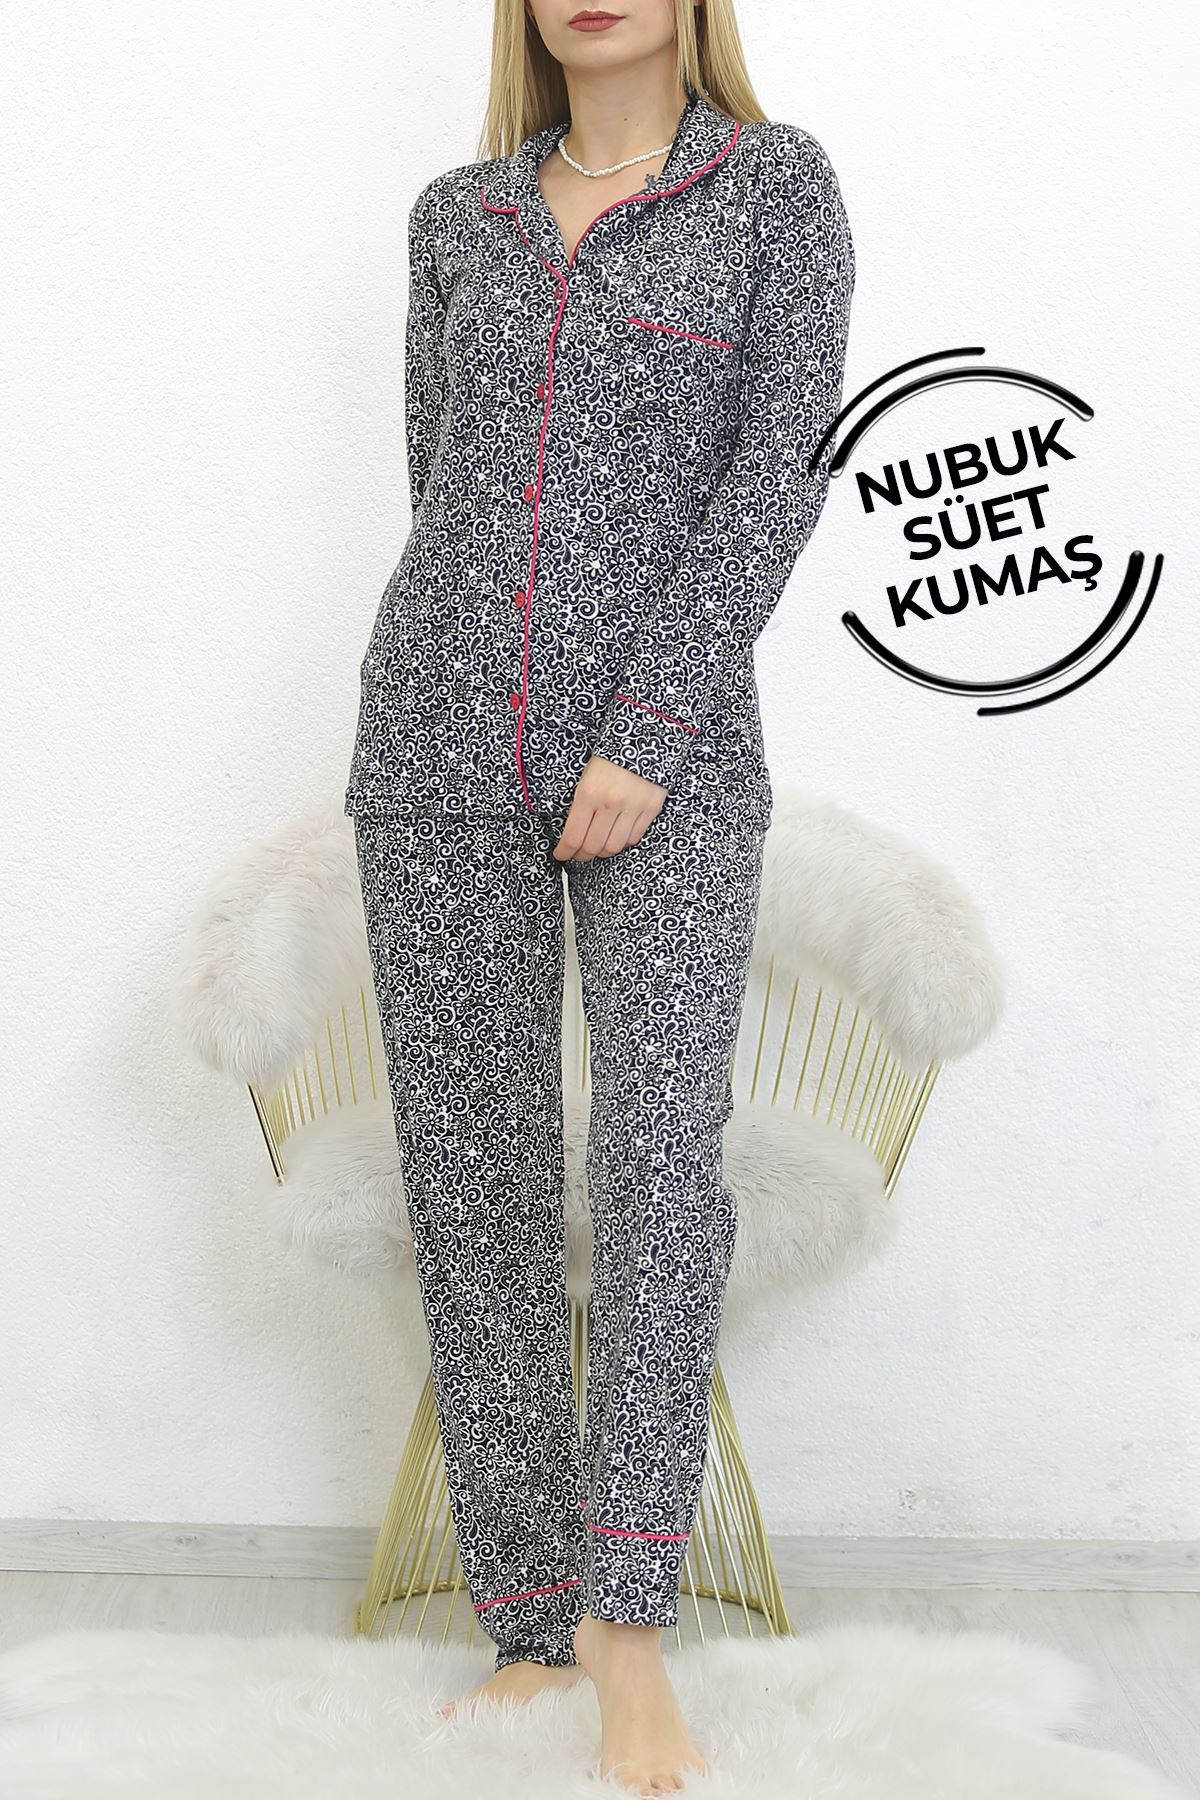 Nubuk Süet Pijama Takımı Siyahfuşya2 - 8529.1048.